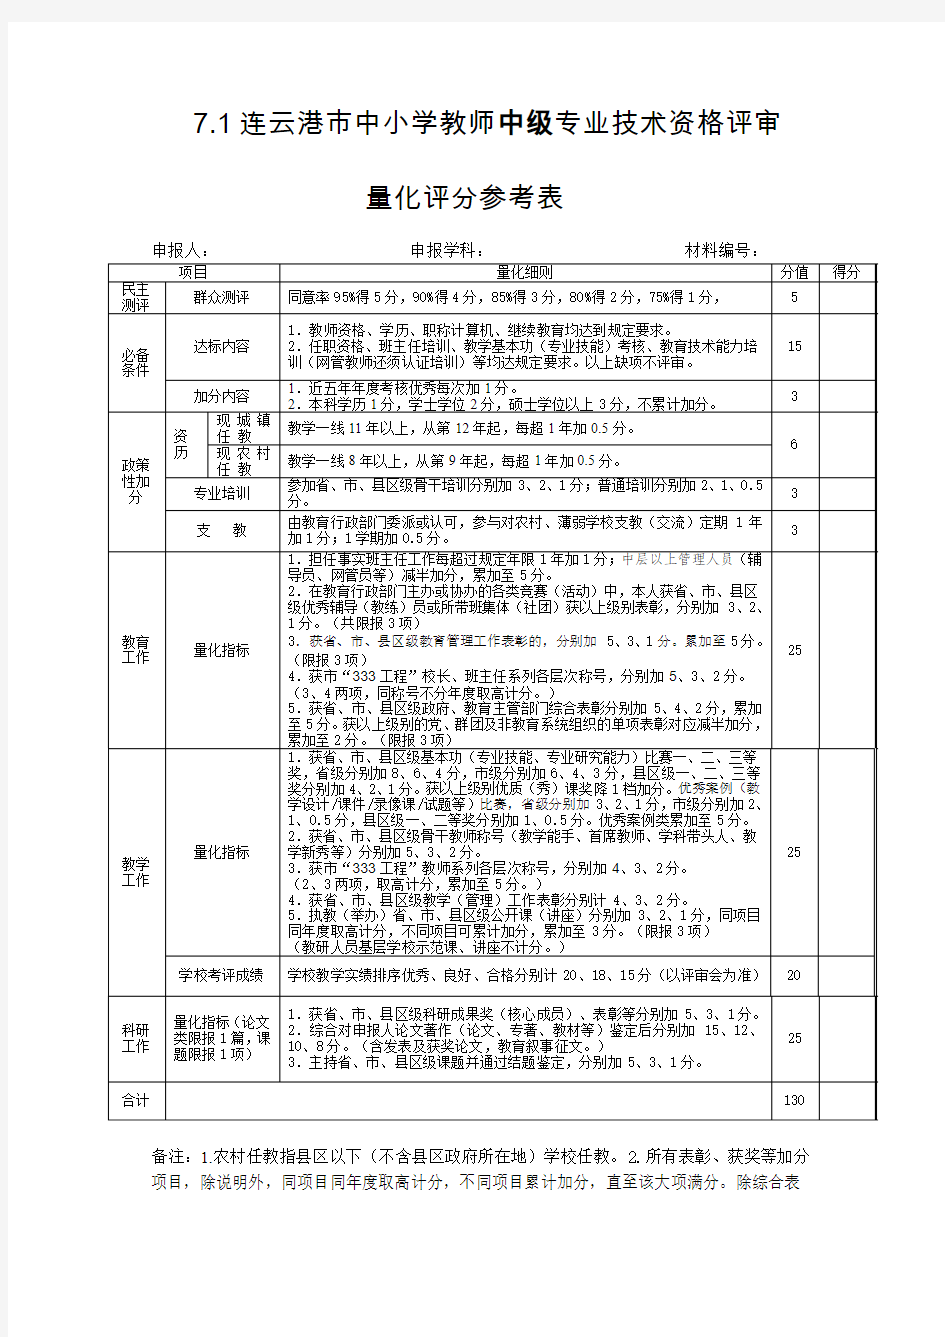 7.1 连云港市中小学教师中级专业技术资格评审量化评分参考表